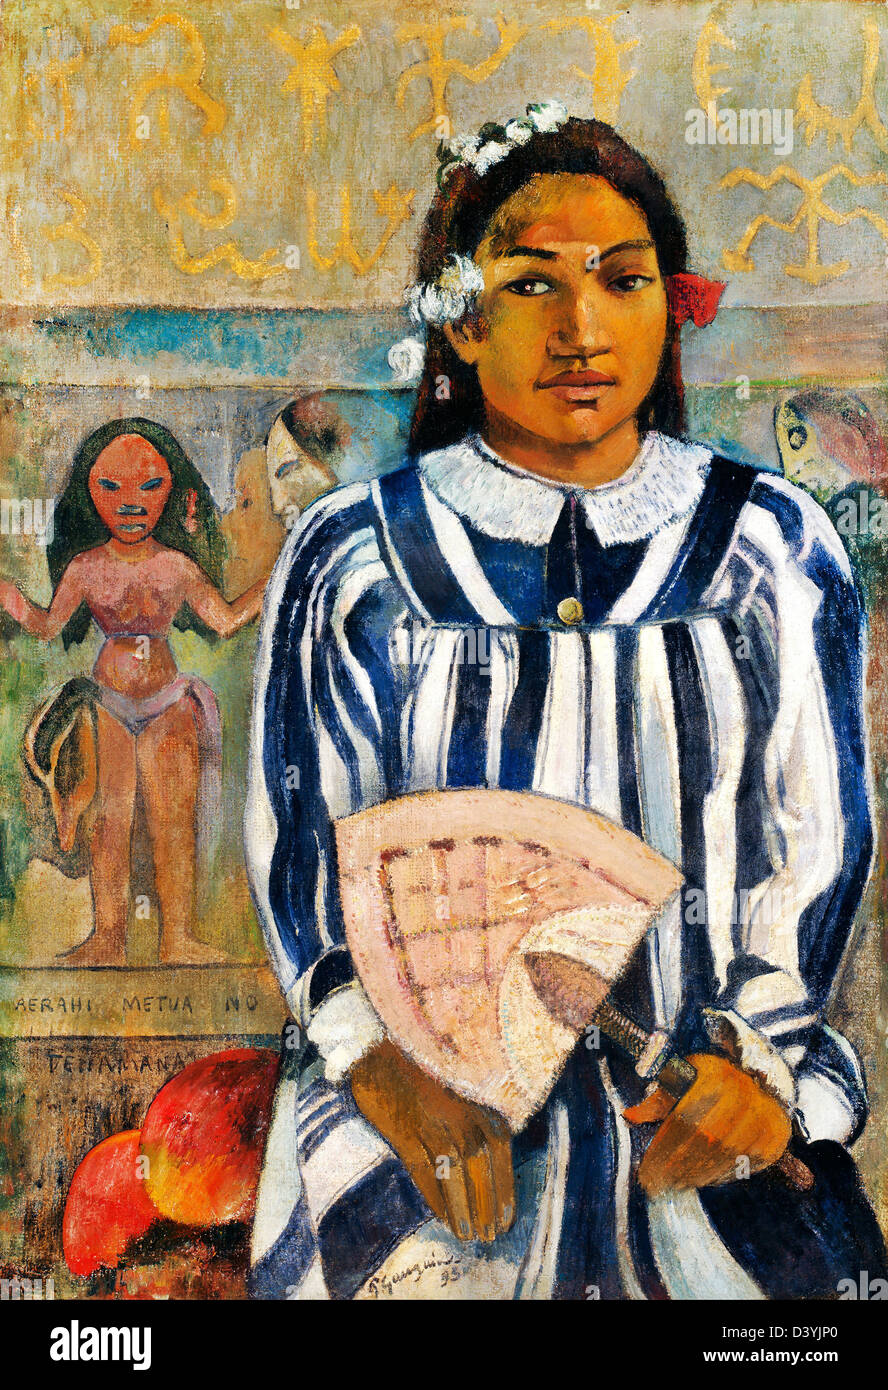 Paul Gauguin, les ancêtres des Tehamana (Tehamana a beaucoup de parents) 1893 Huile sur toile. Art Institute of Chicago Banque D'Images